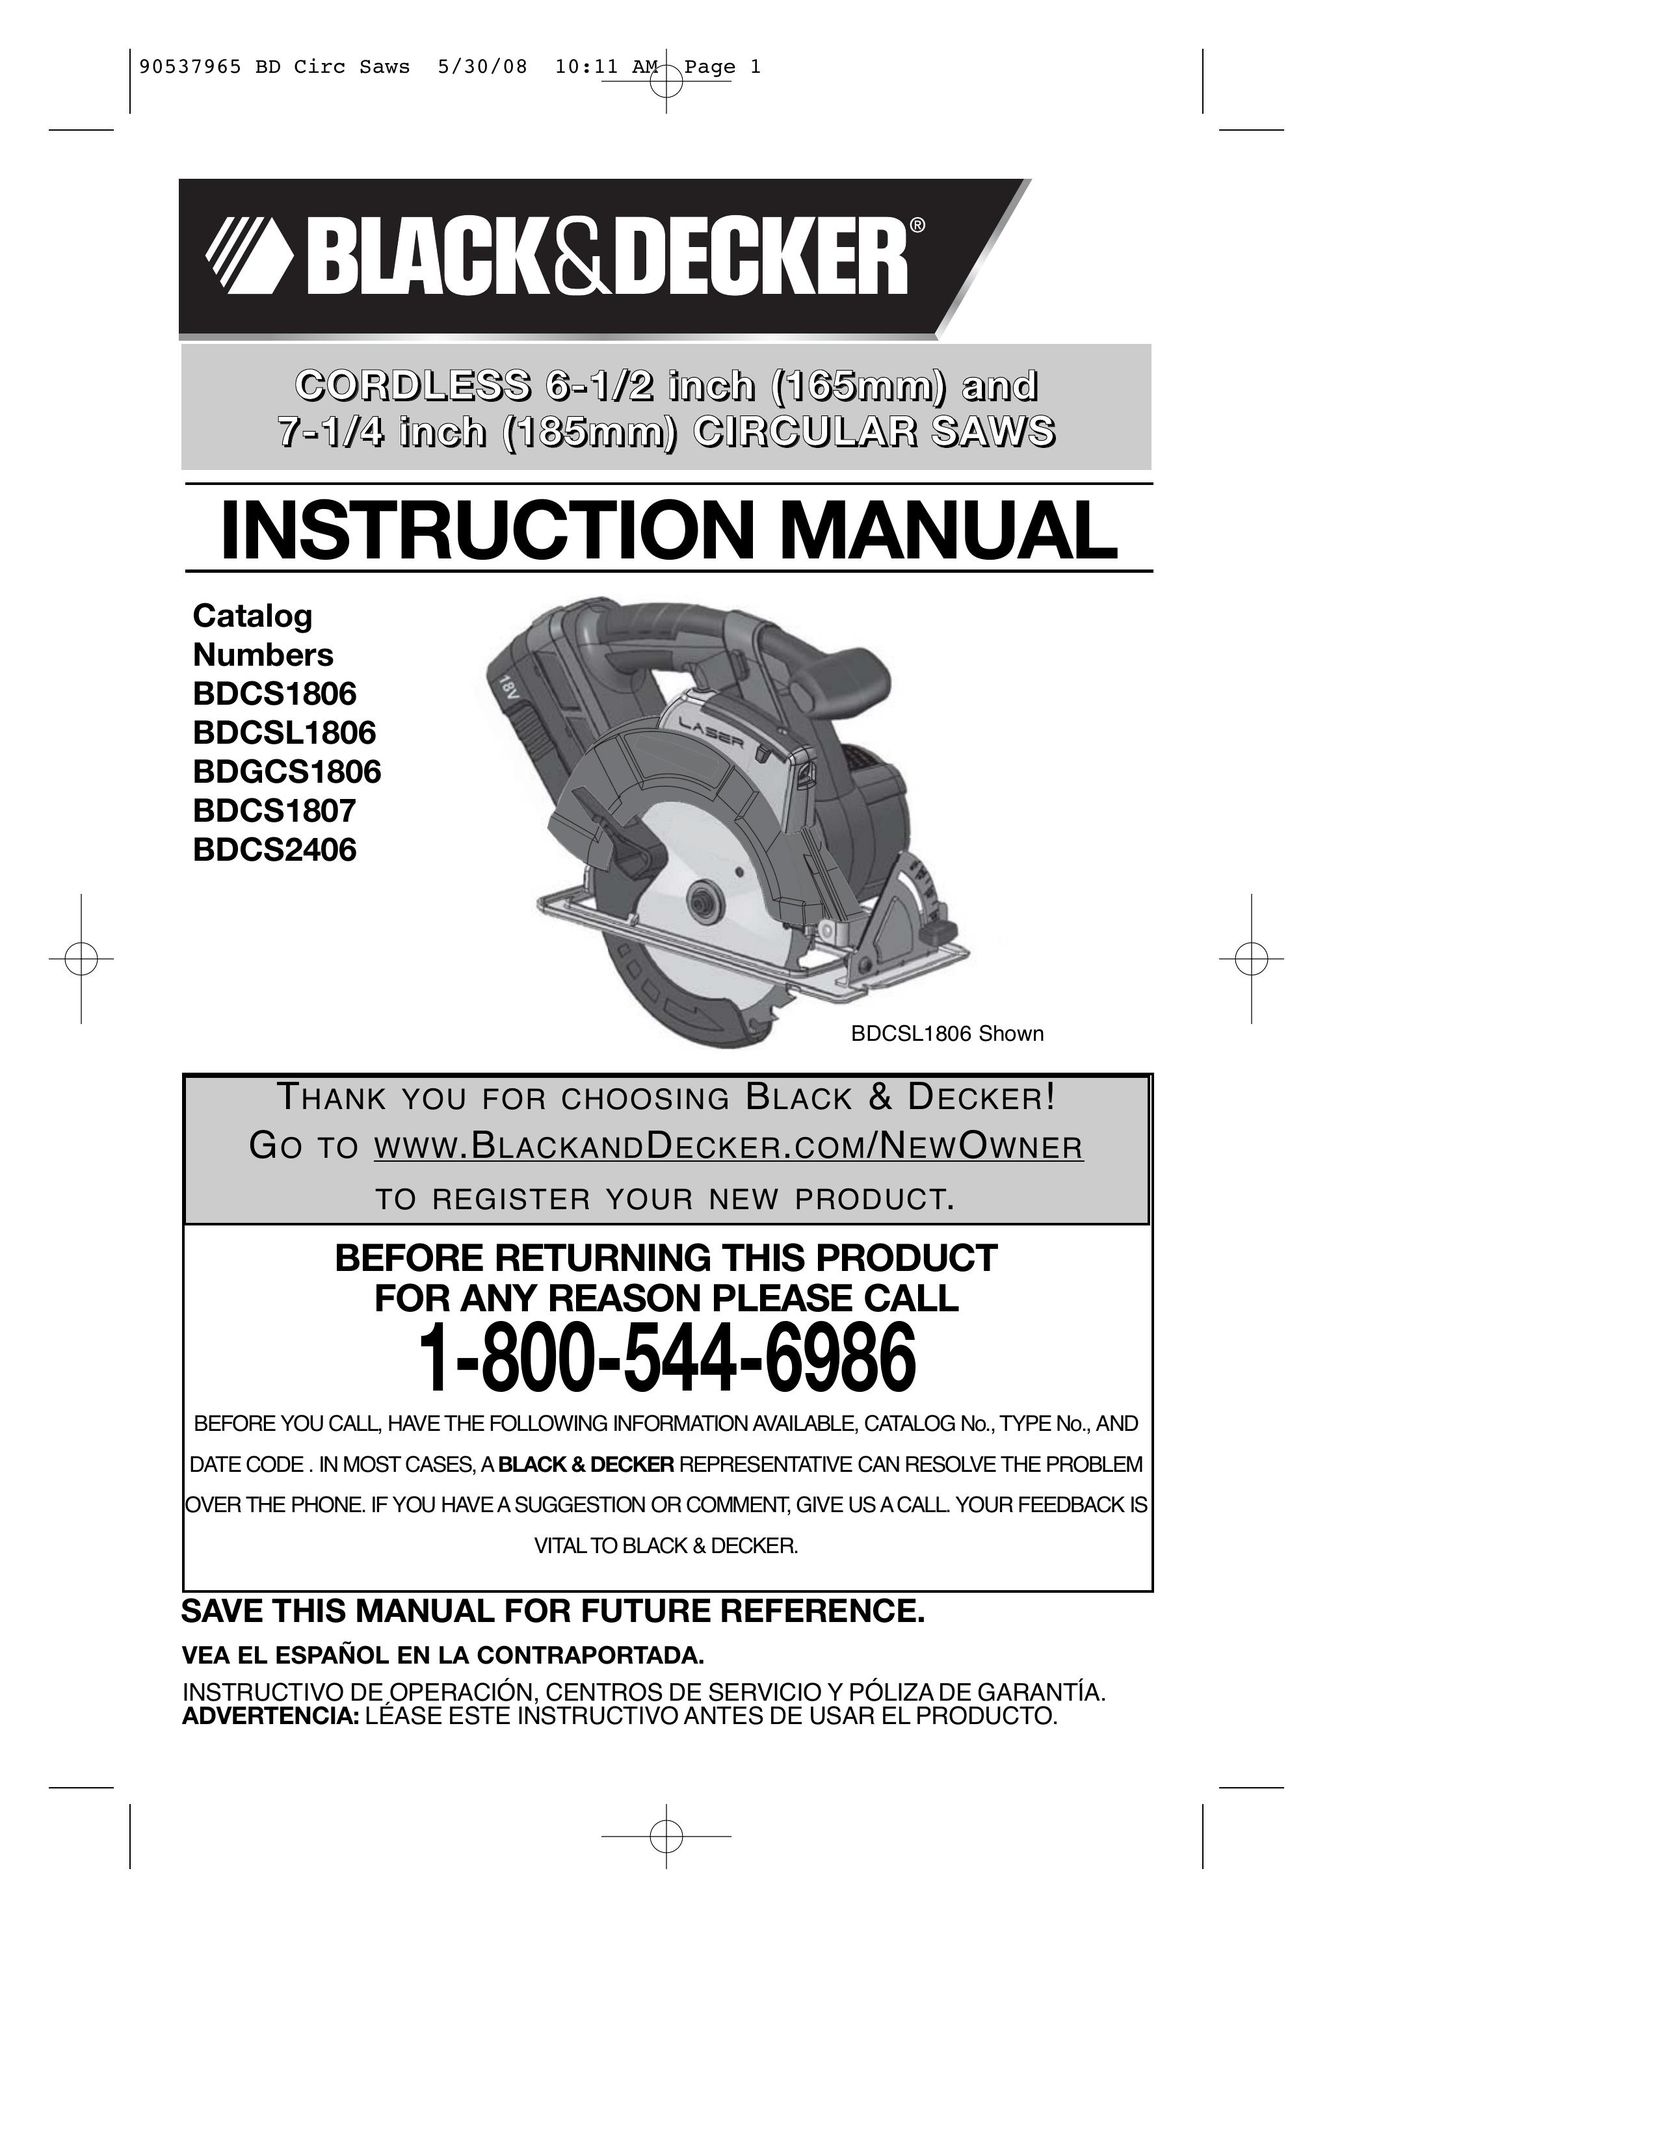 Black & Decker BDCS1807 Cordless Saw User Manual